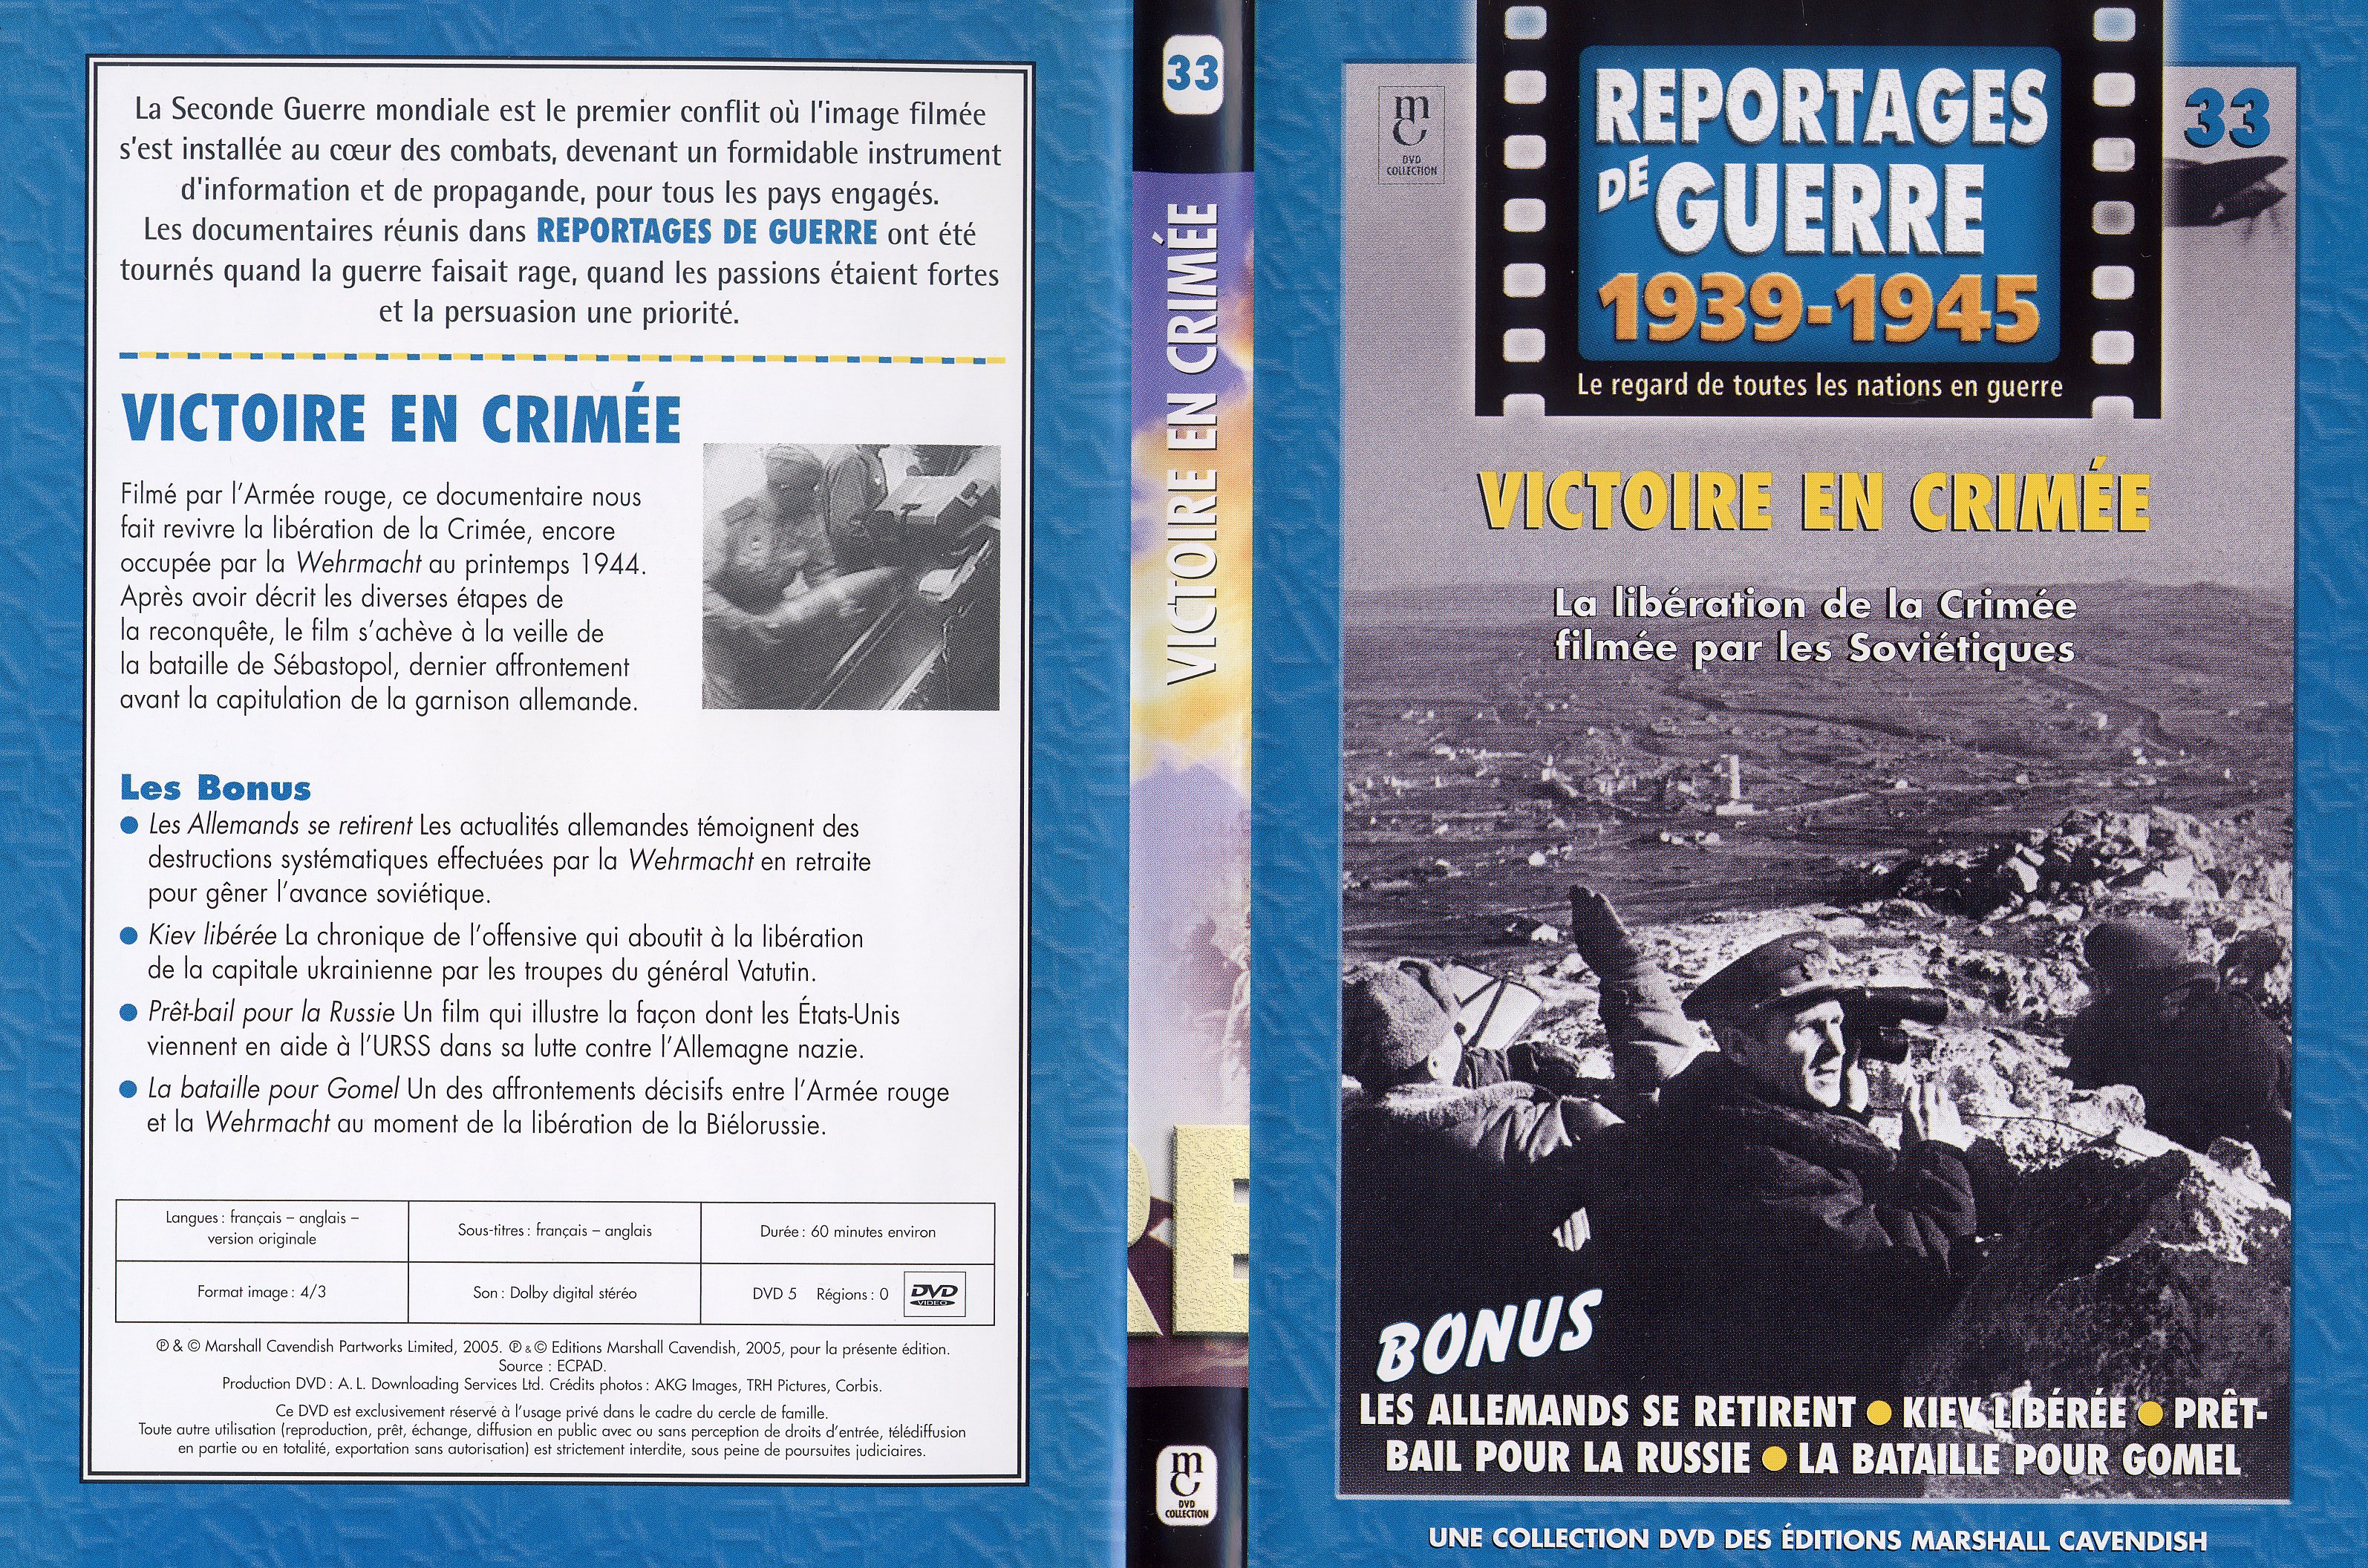 Jaquette DVD Reportages de guerre vol 33